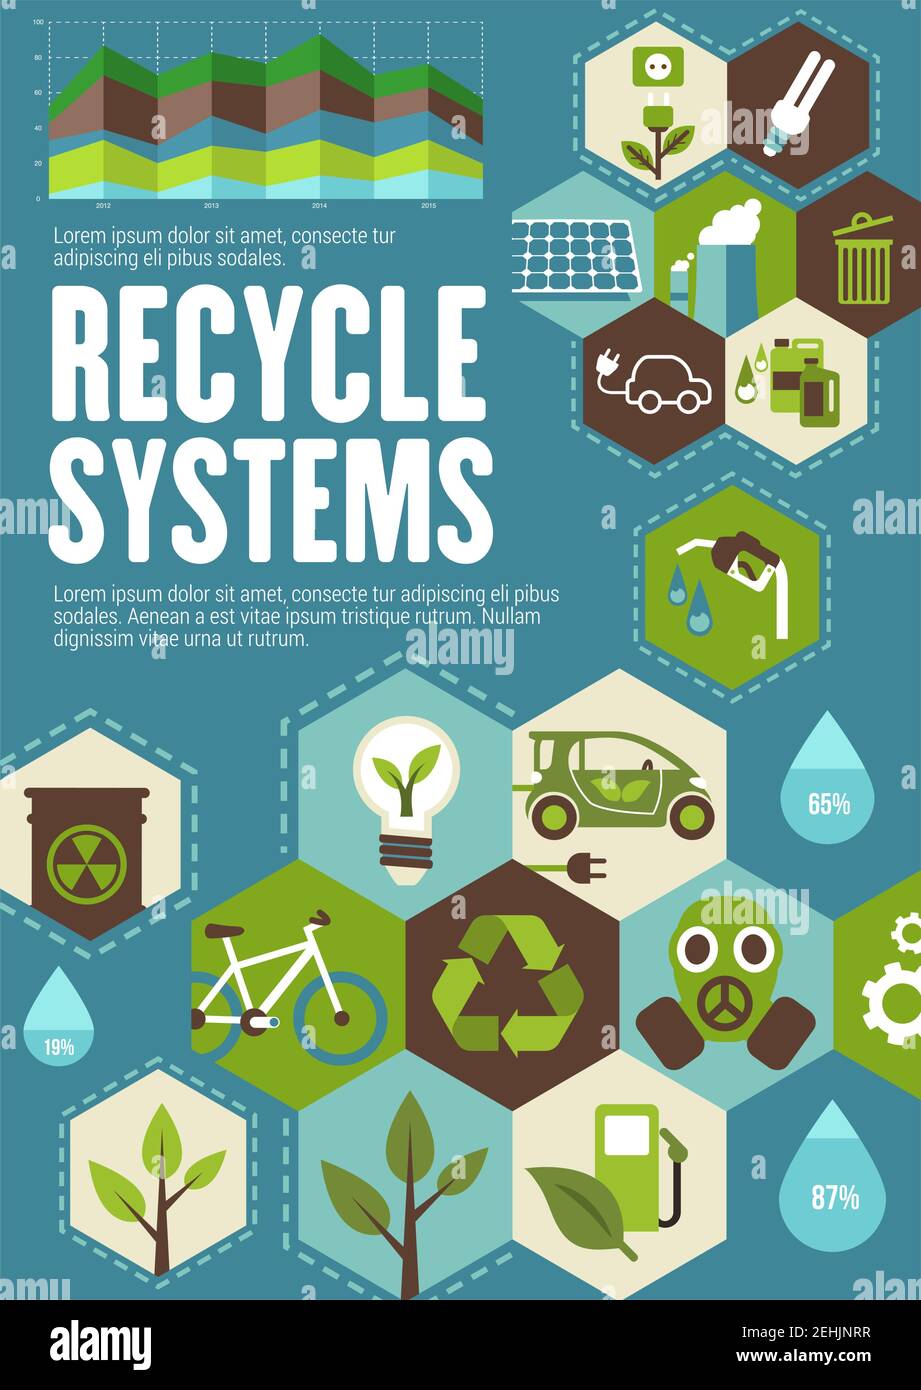 Recycling-System-Poster mit Ökologie und grünen Energie-Symbole. Grüner Baum, Sonnenkollektoren und Windkraftanlagen, Öko-Transport, Abfallrecycling und Bio-Brennstoff Fla Stock Vektor